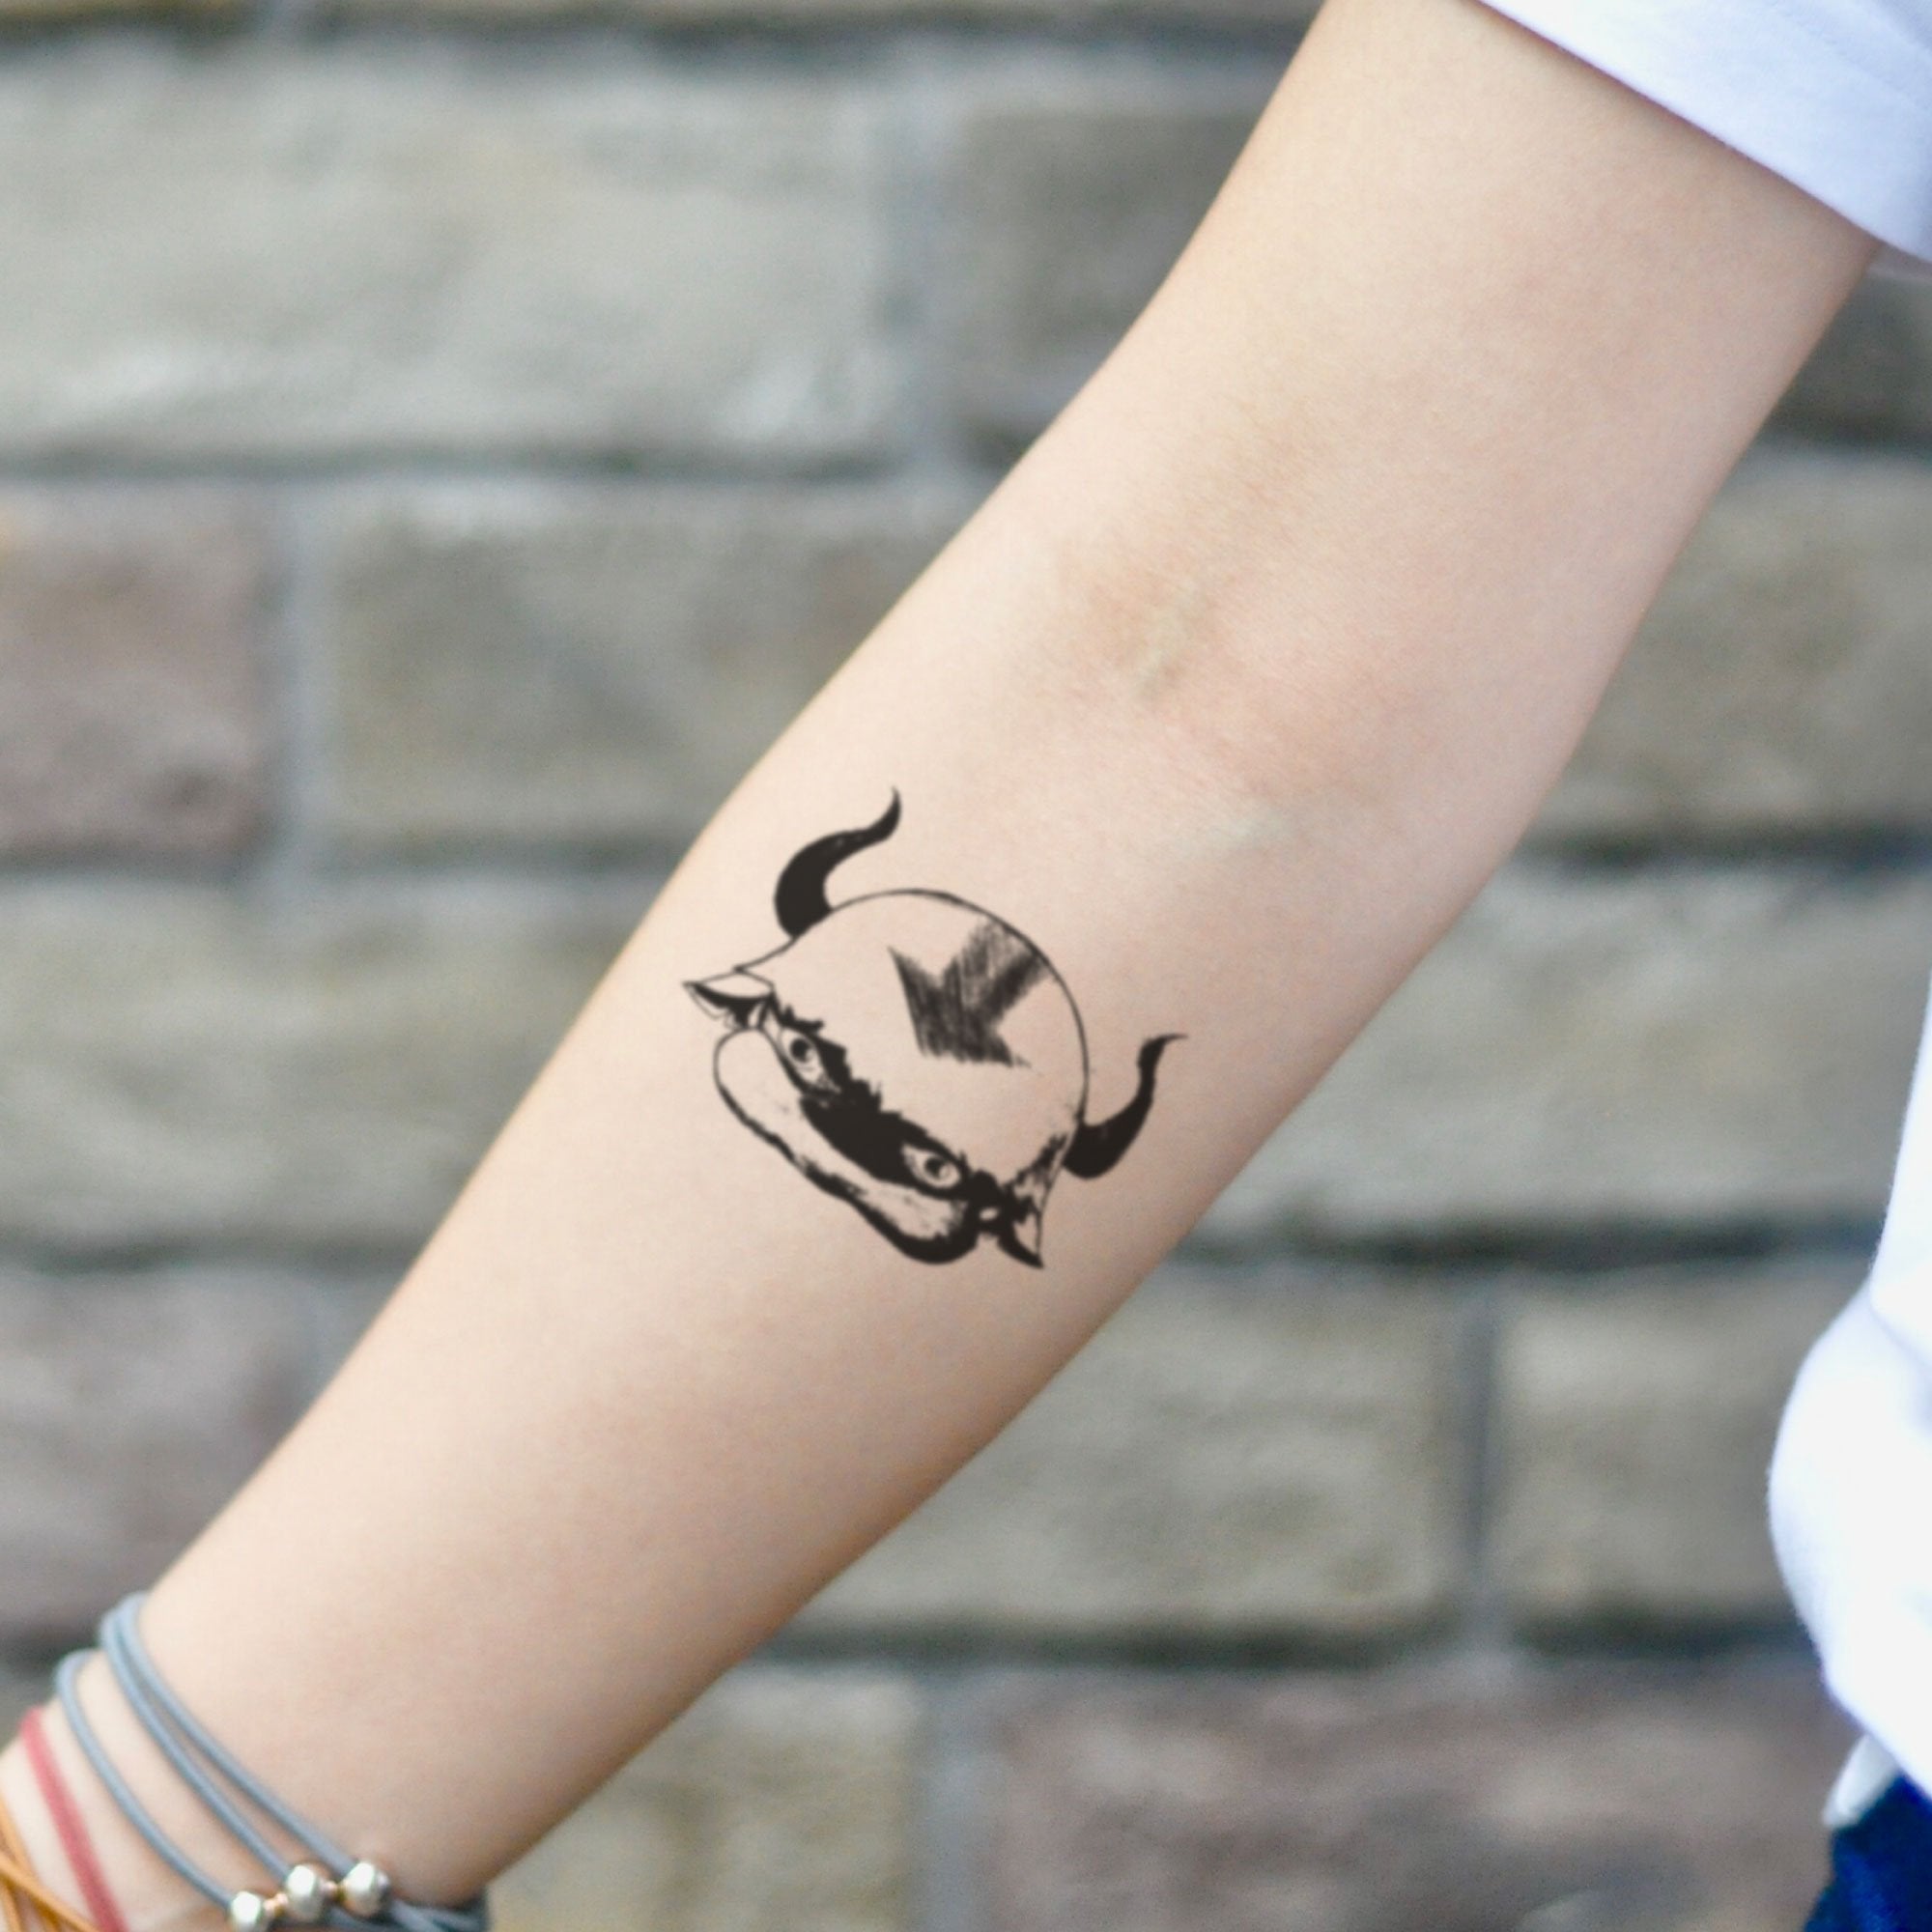 Appa Avatar Temporary Tattoo Sticker - OhMyTat